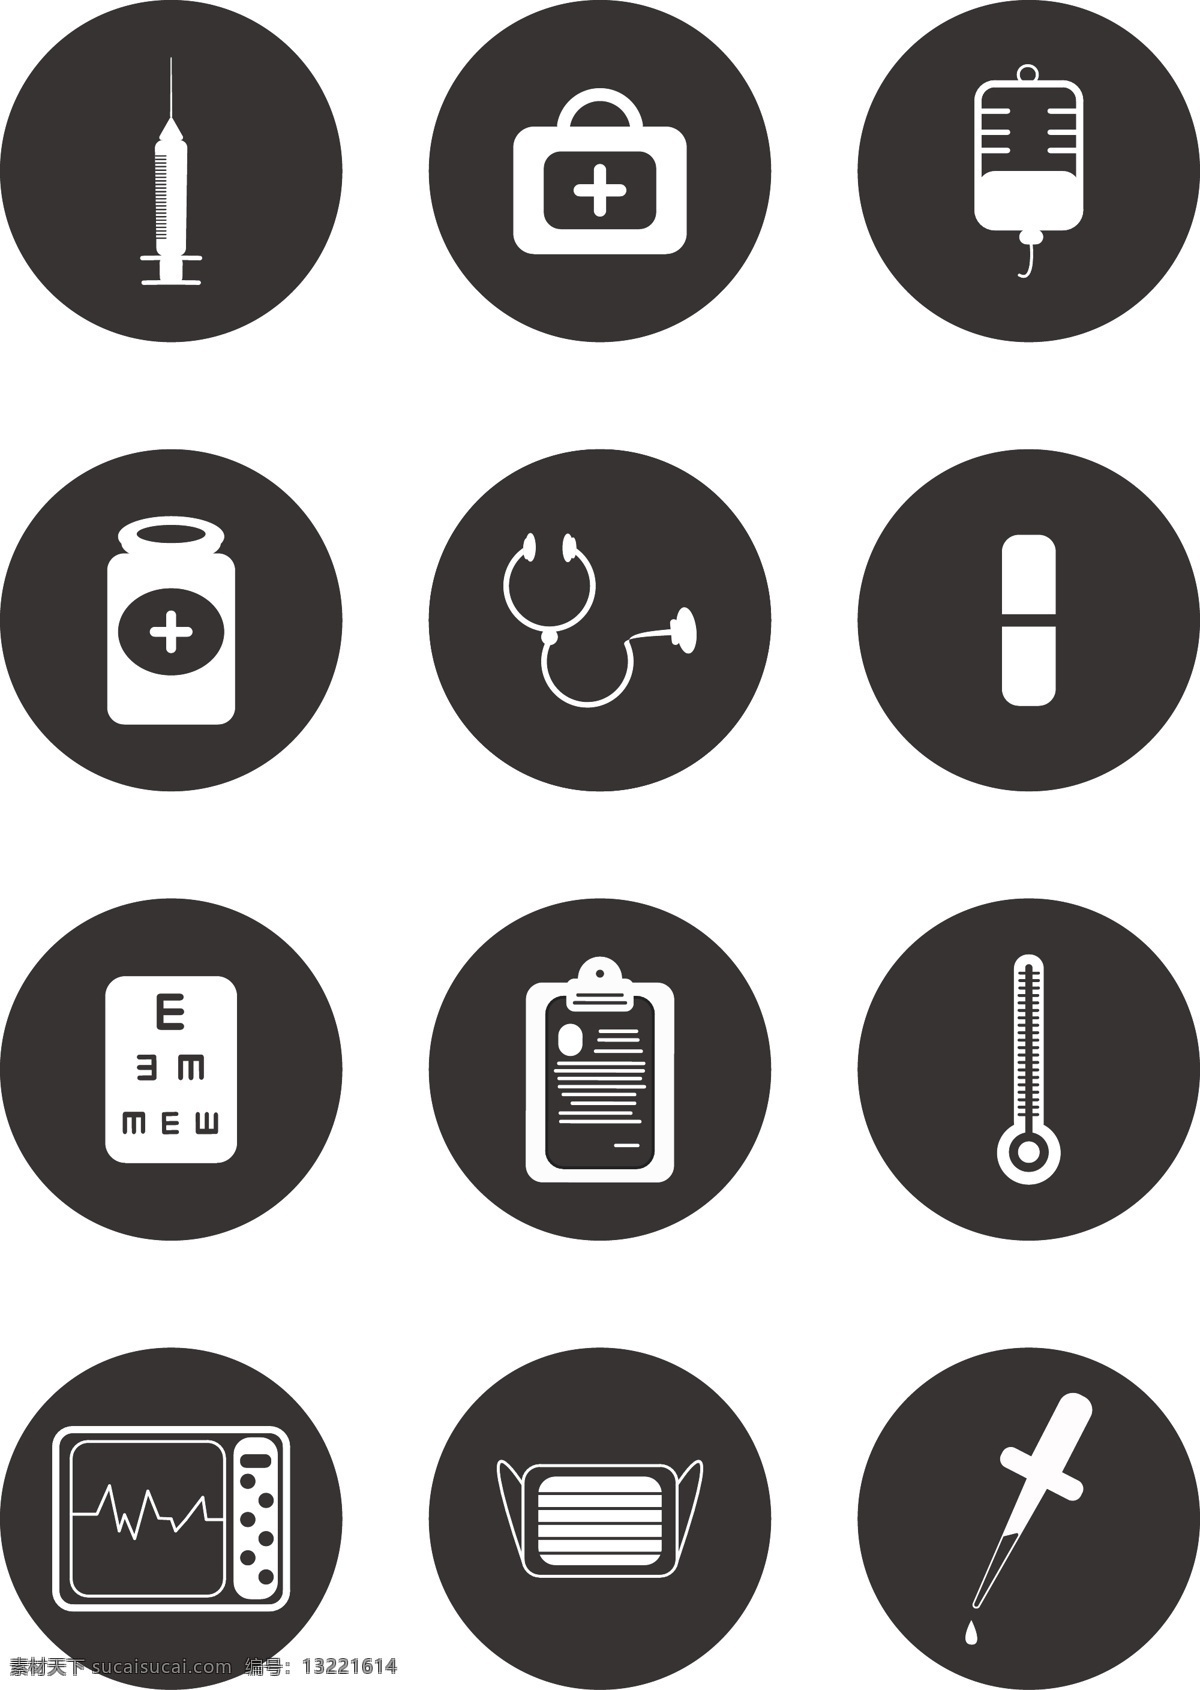 医疗器械 设备 icon 矢量 商用 元素 可商用